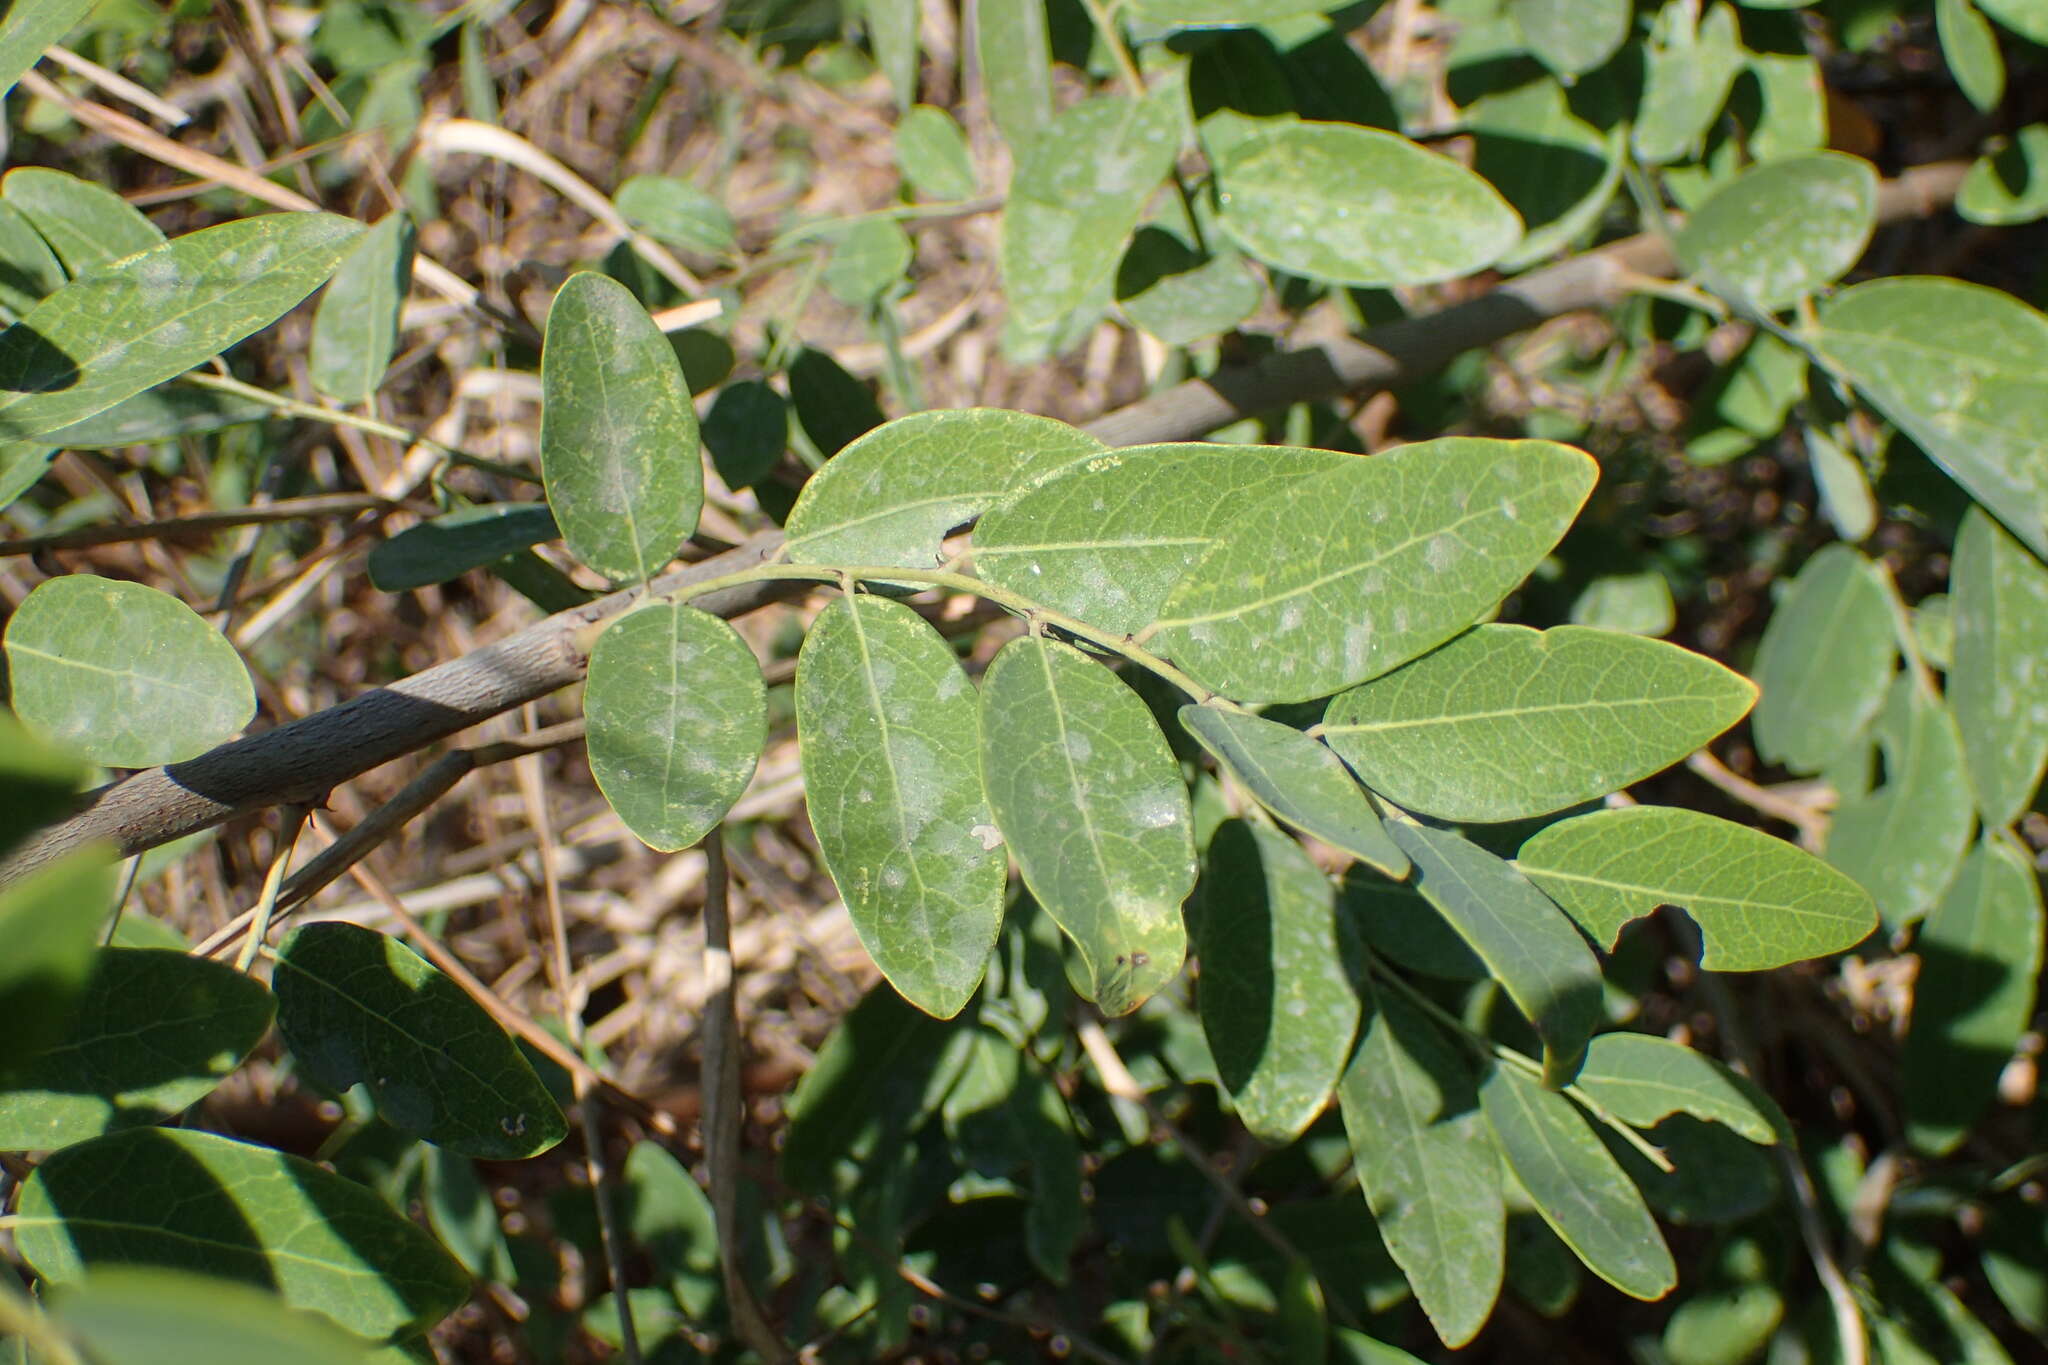 Image de Phyllanthus reticulatus var. reticulatus